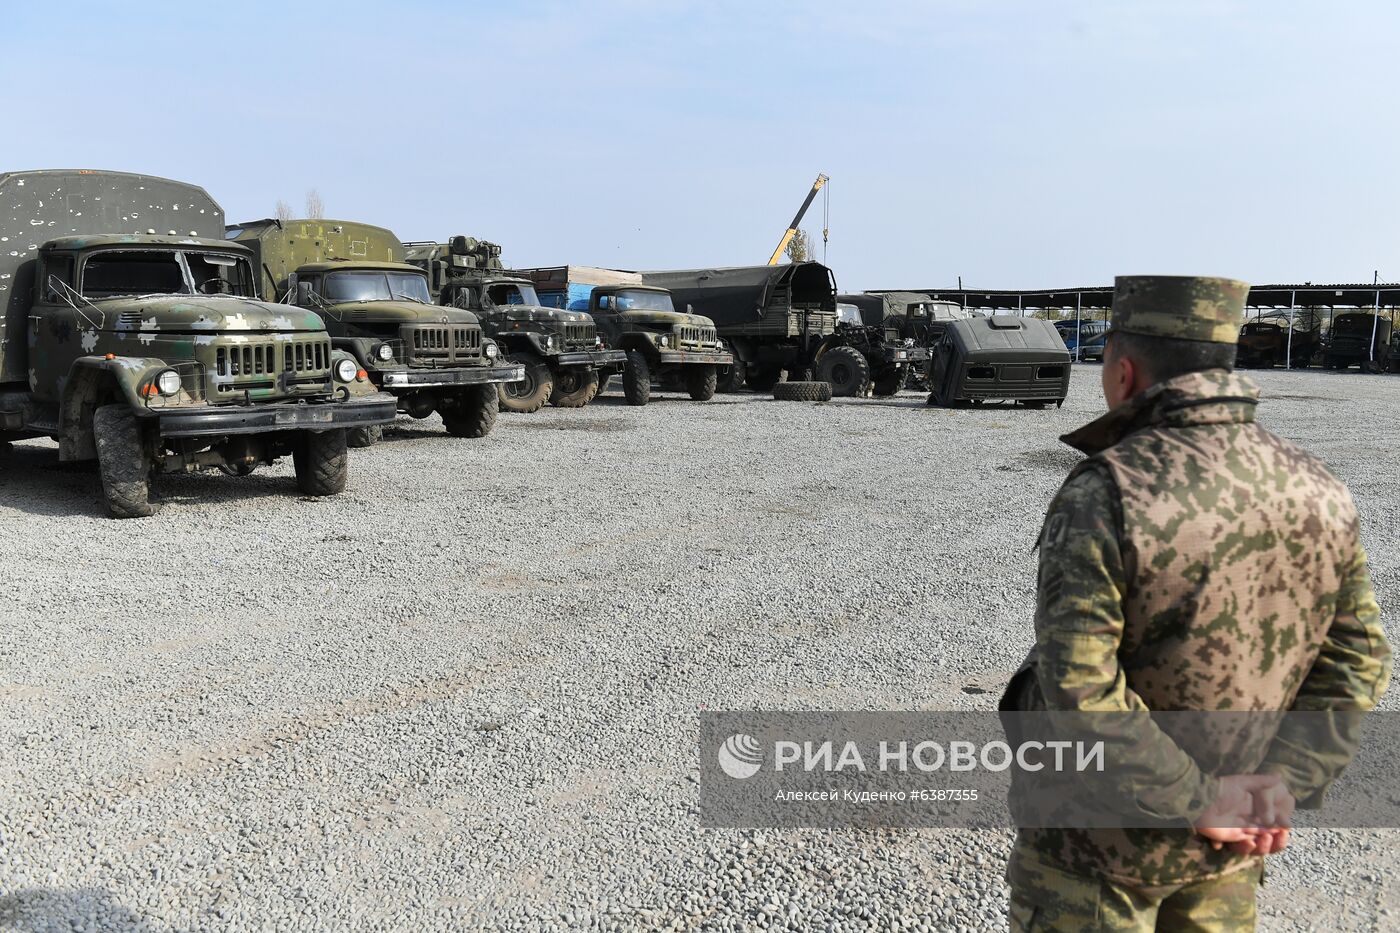 Техника, захваченная в ходе боевых действий в Нагорном Карабахе азербайджанскими военными